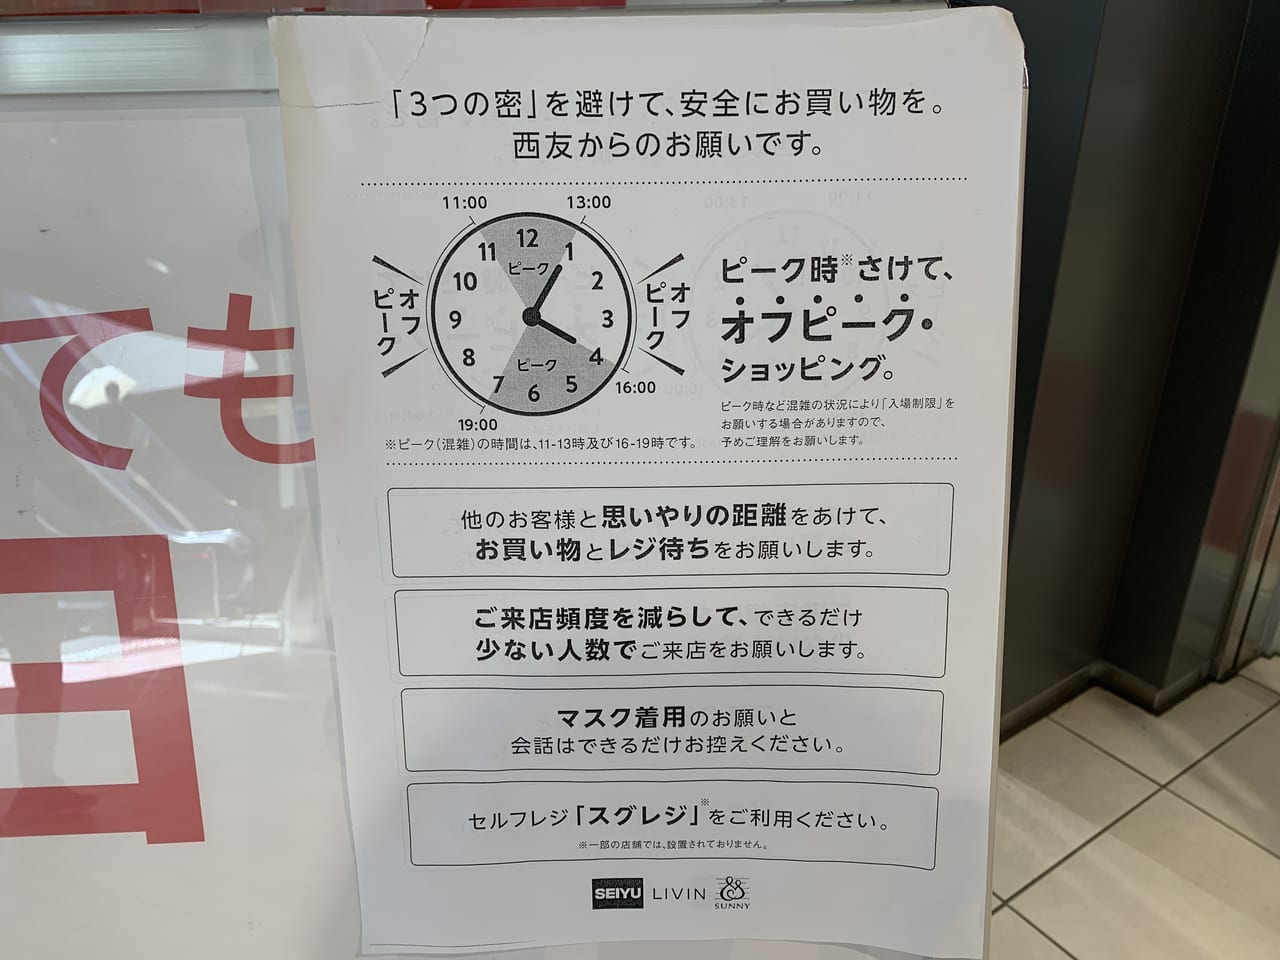 墨田区 ご注意ください 現在西友錦糸町店は２４時間営業を行っていません 混雑している時間帯はいつ 号外net 墨田区